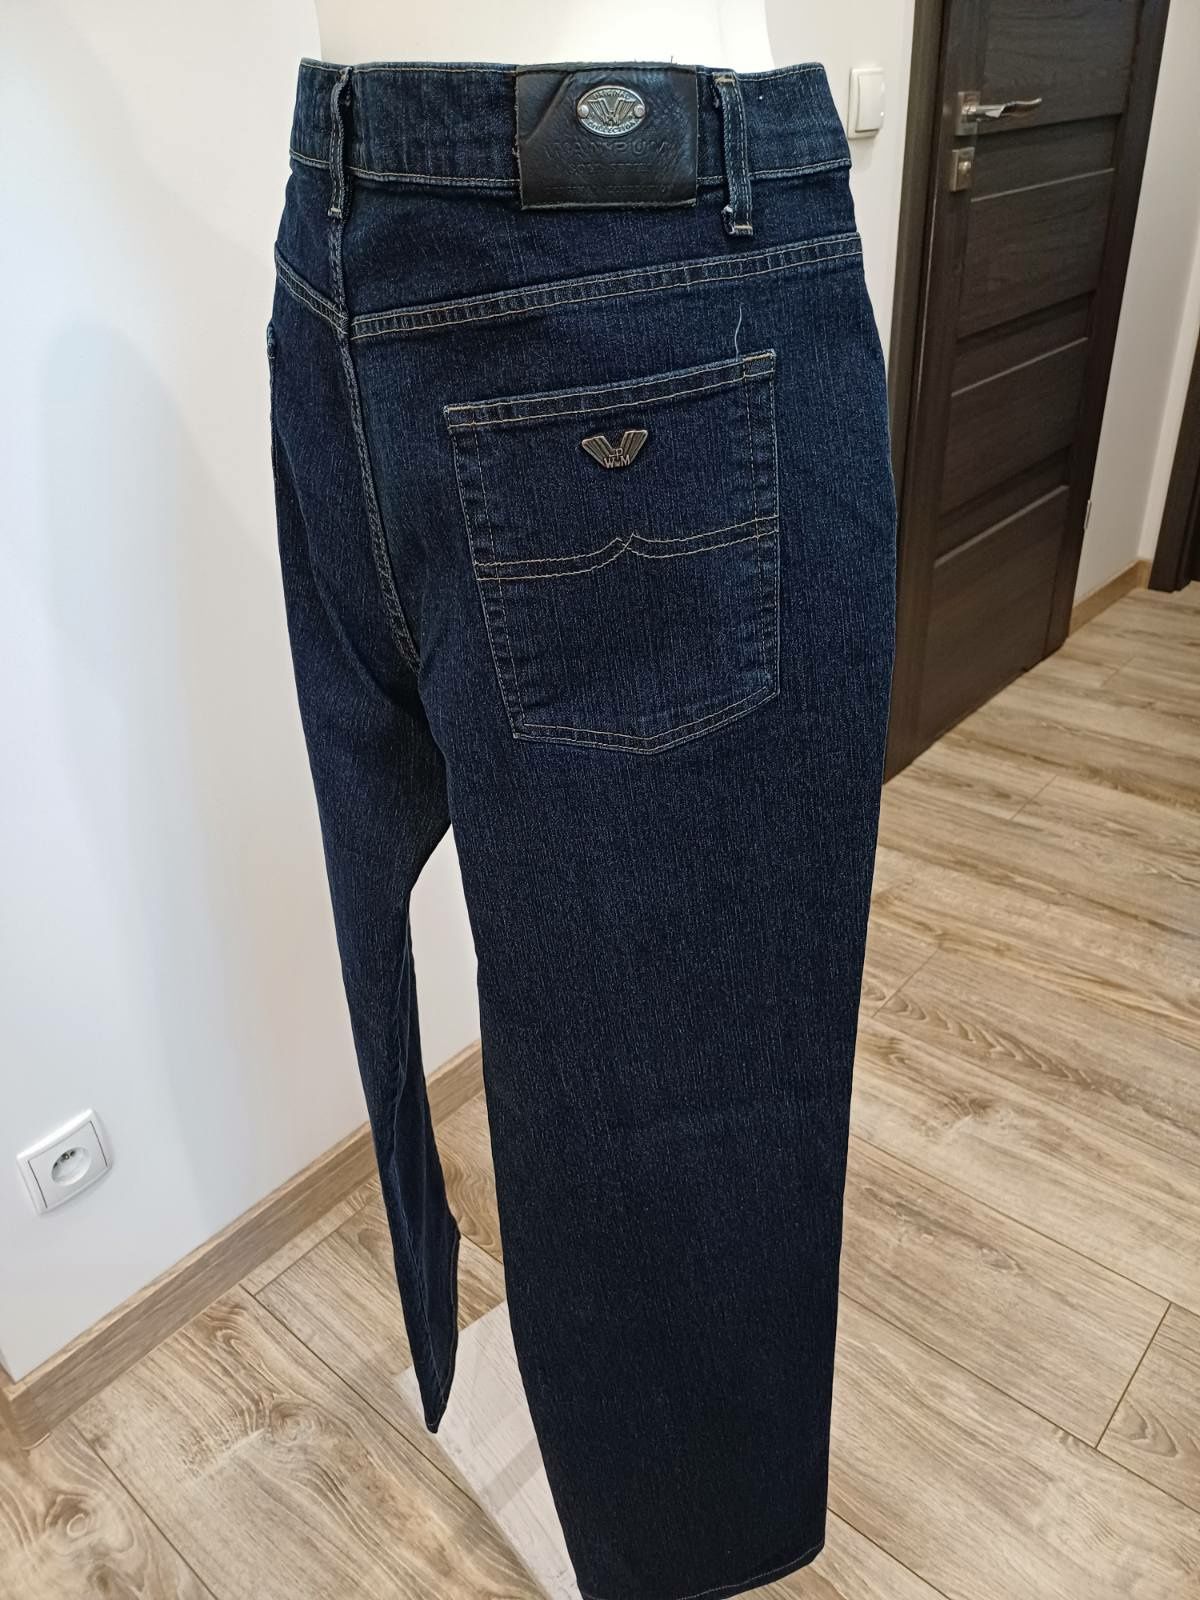 Spodnie męskie granatowy jeans Wampum rozm 2XL./3XL.